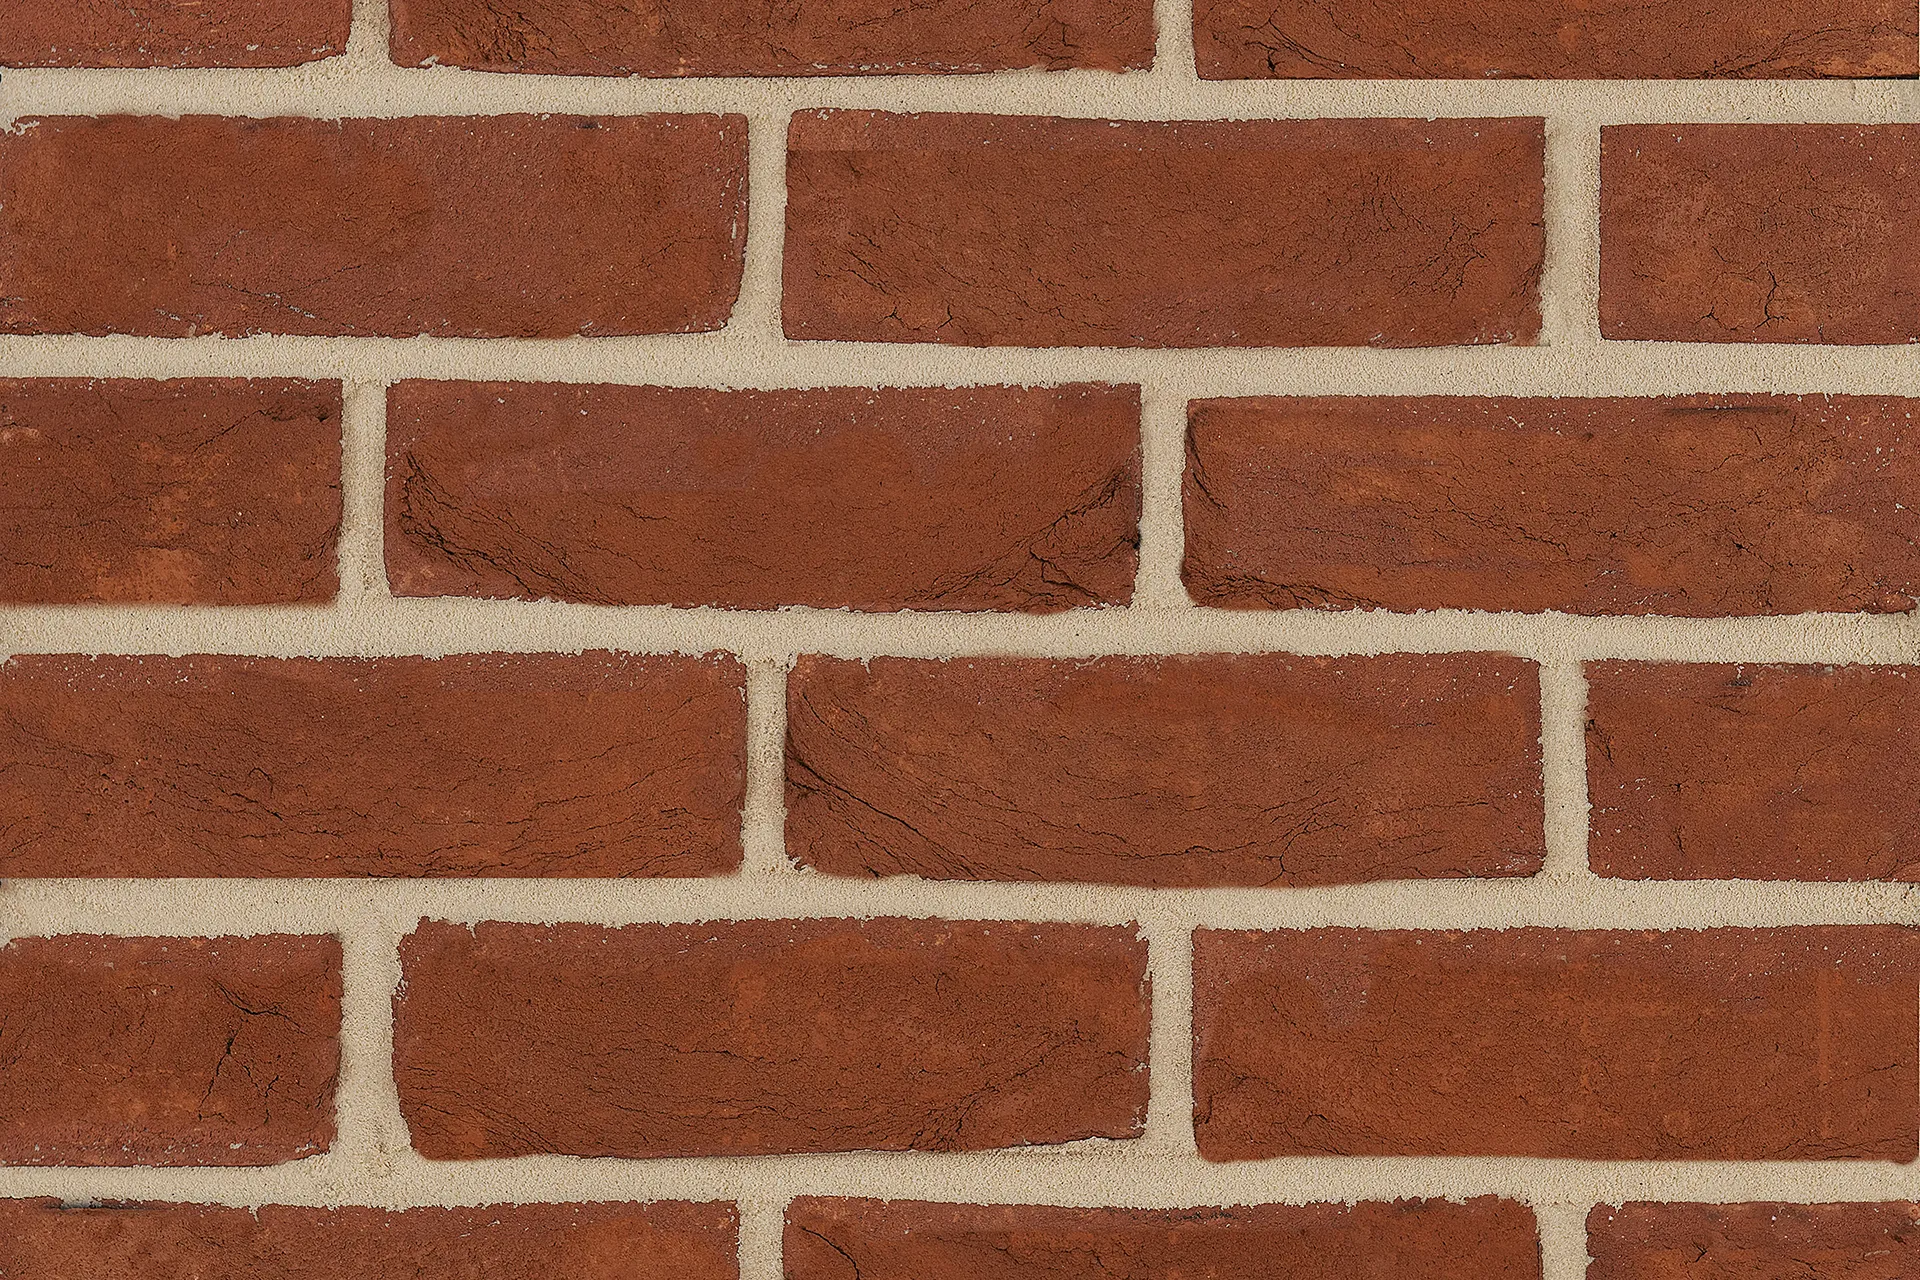 Shropshire Red bricks